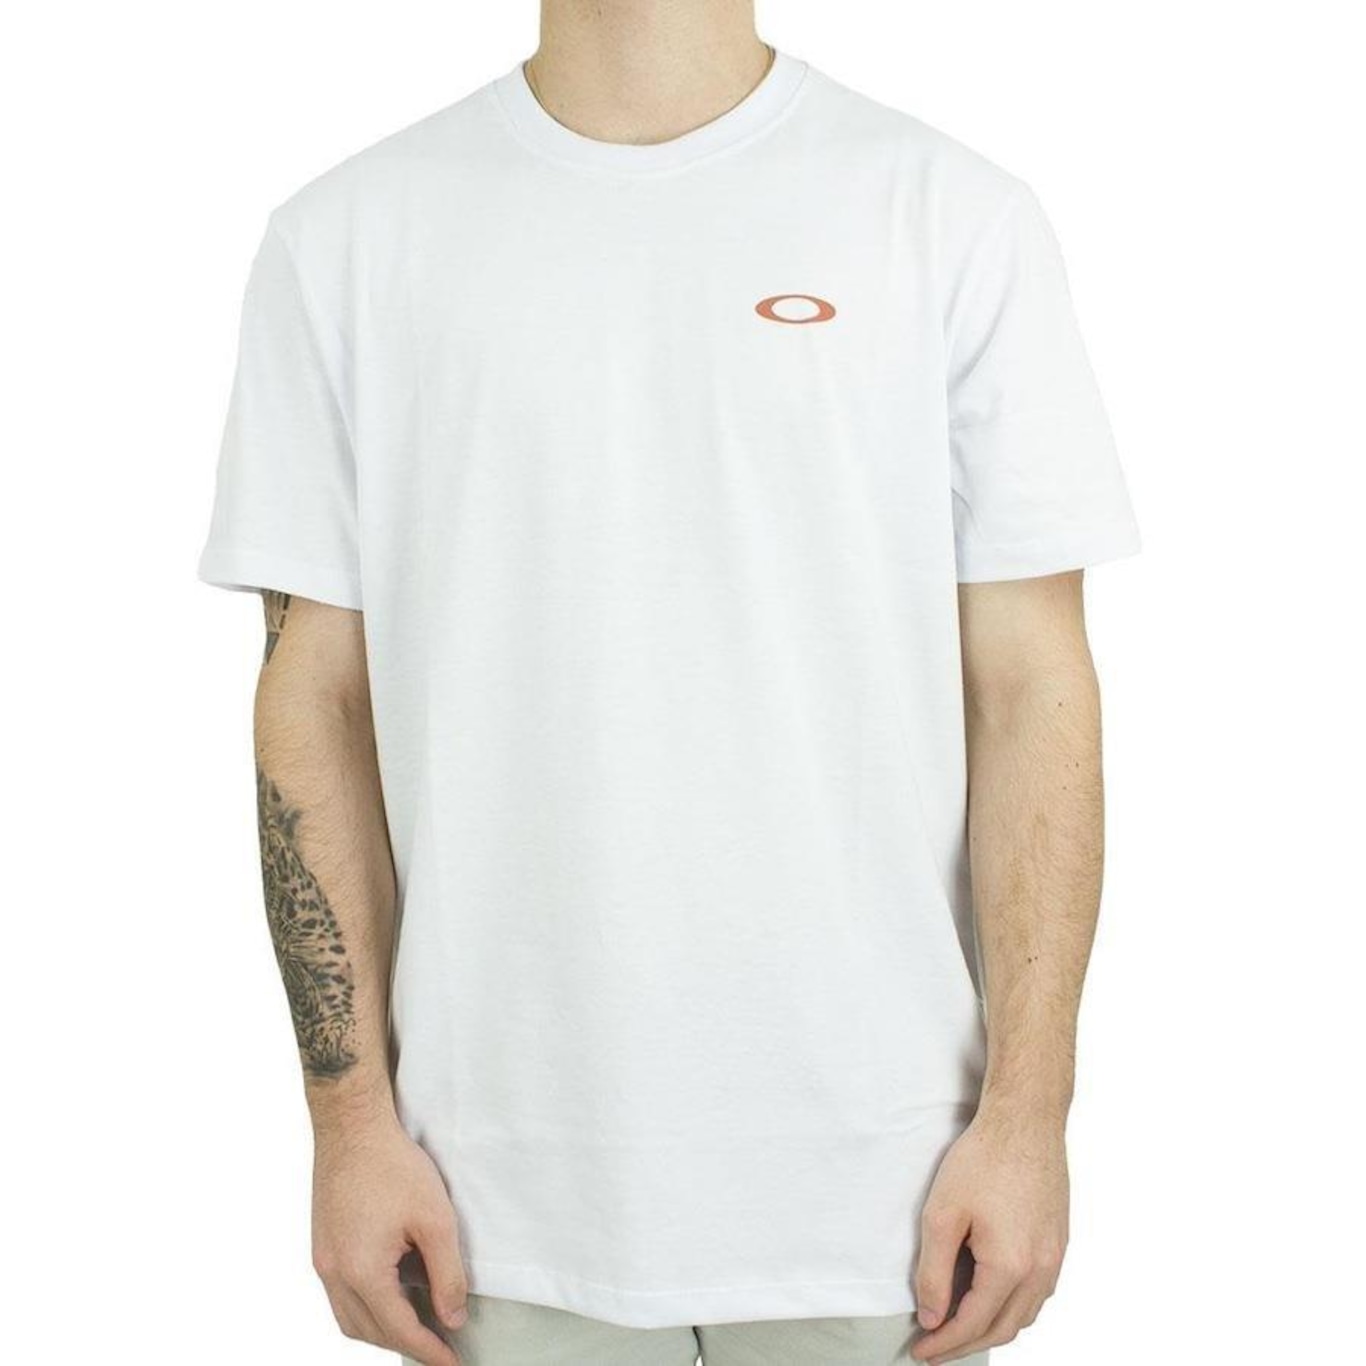 Camiseta Oakley Essential - Branca